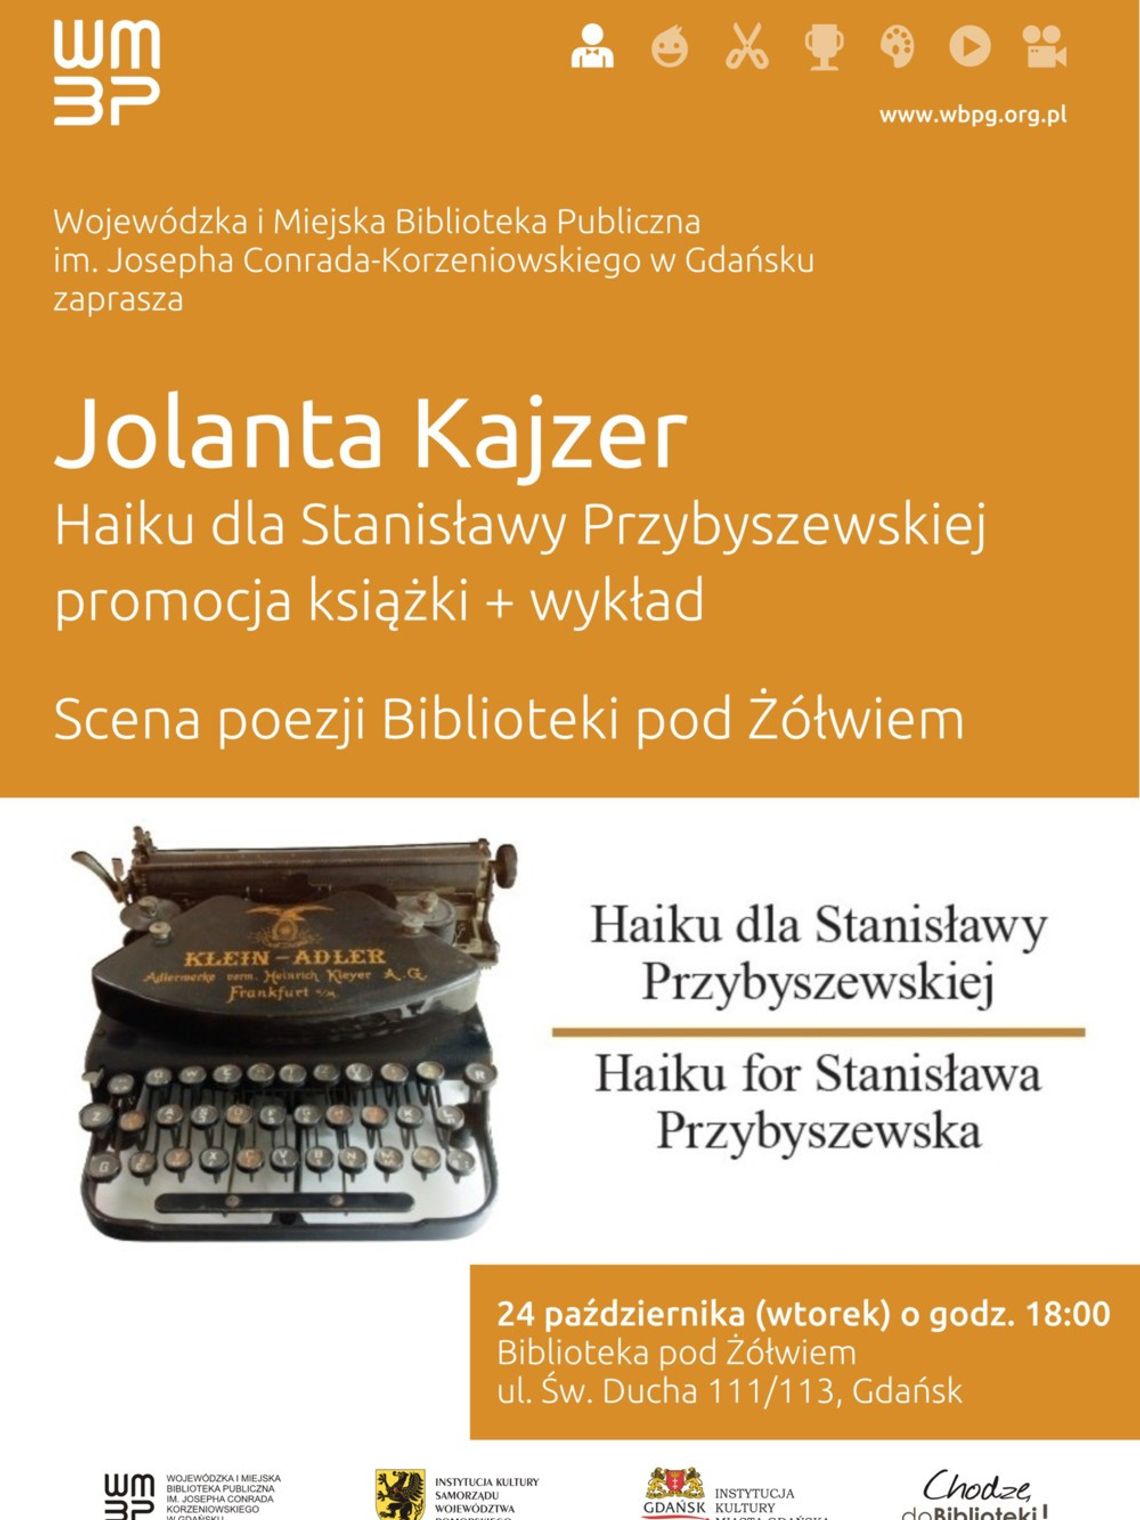 Jolanta Kajzer, "Haiku dla Stanisławy Przybyszewskiej". Promocja książki + wykład